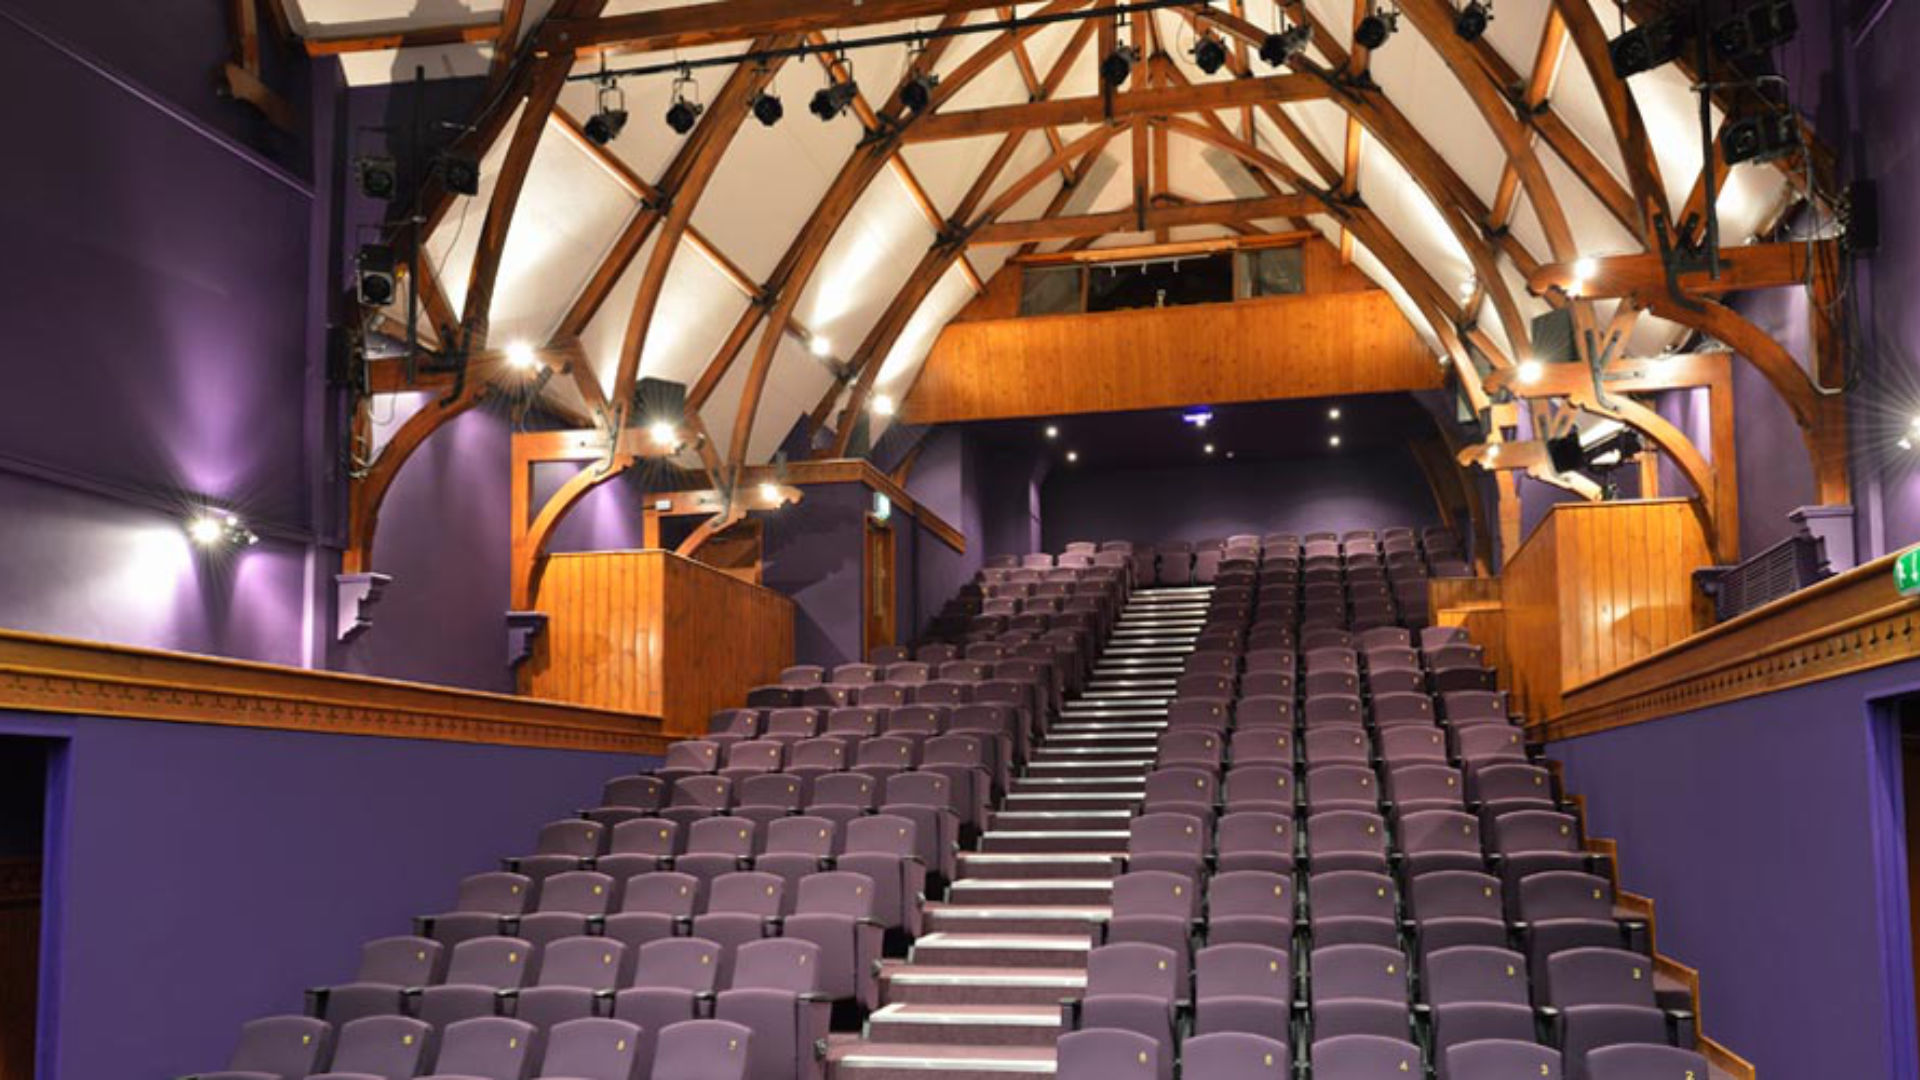 The Fullarton Auditorium after refurbishment